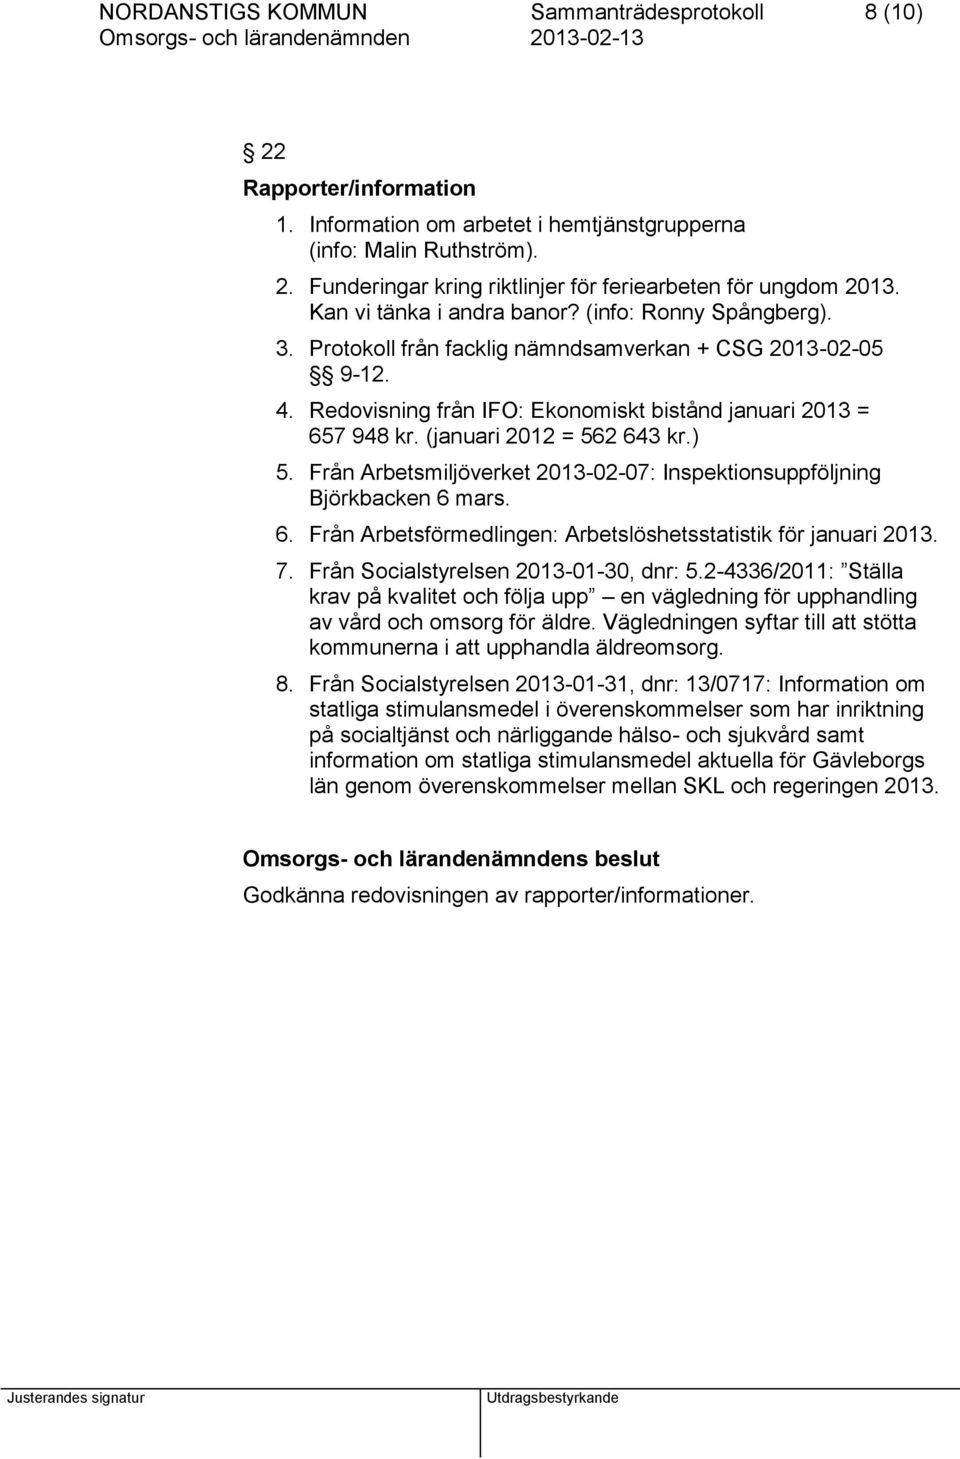 (januari 2012 = 562 643 kr.) 5. Från Arbetsmiljöverket 2013-02-07: Inspektionsuppföljning Björkbacken 6 mars. 6. Från Arbetsförmedlingen: Arbetslöshetsstatistik för januari 2013. 7.